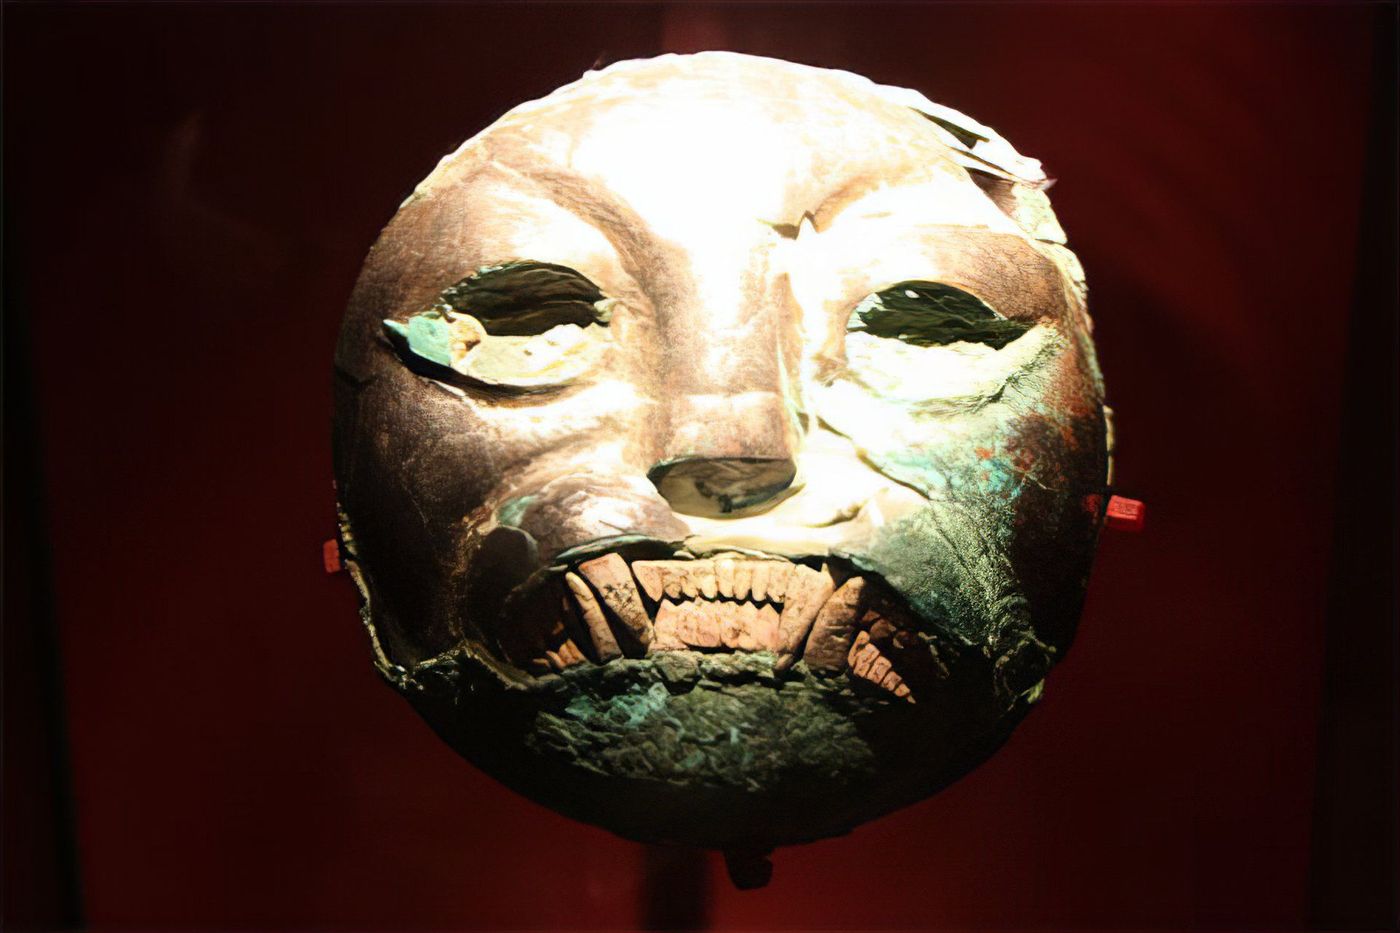 Masque retrouvé sur le site du Seigneur de Sipan